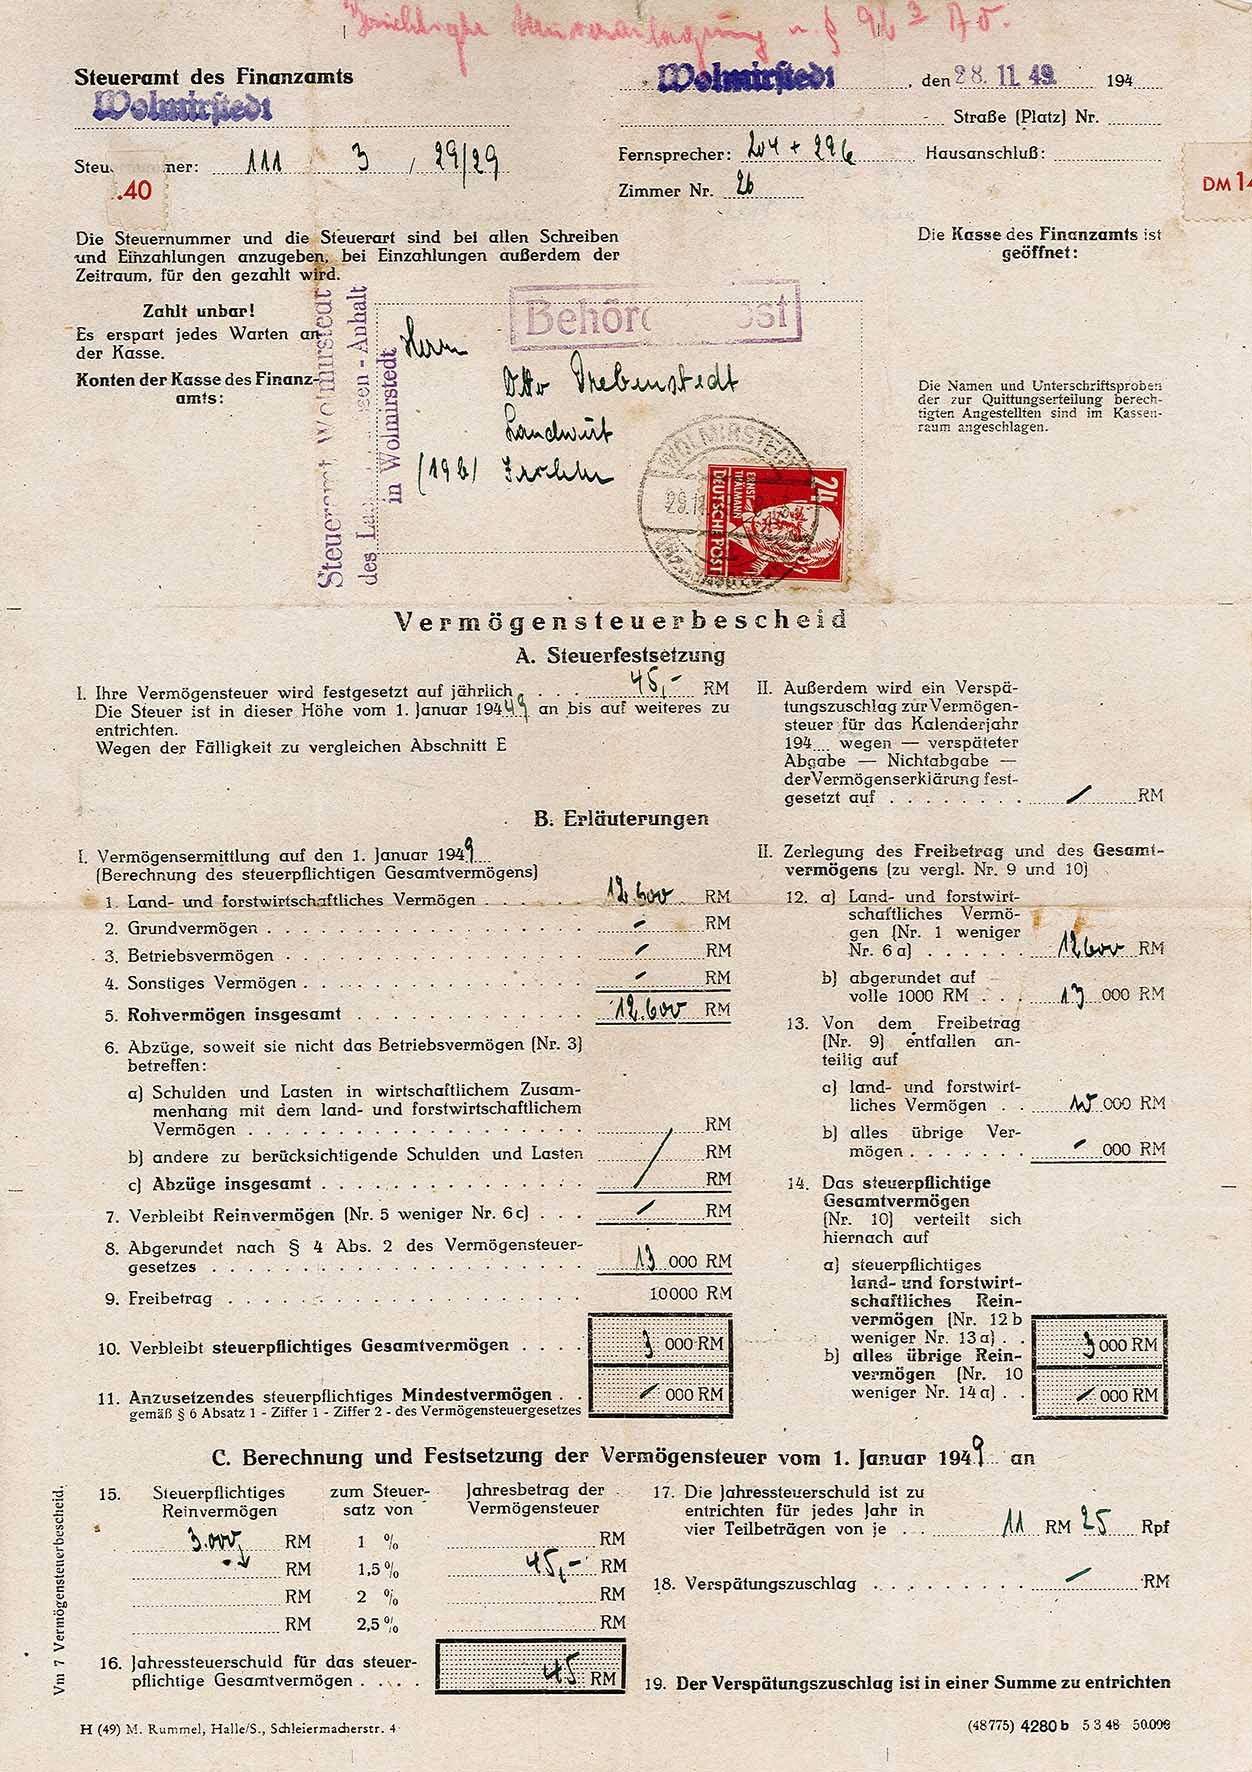 Vermögenssteuerbescheid für Otto Drebenstedt für das Jahr 1949, 28. November 1949 (Museum Wolmirstedt RR-F)